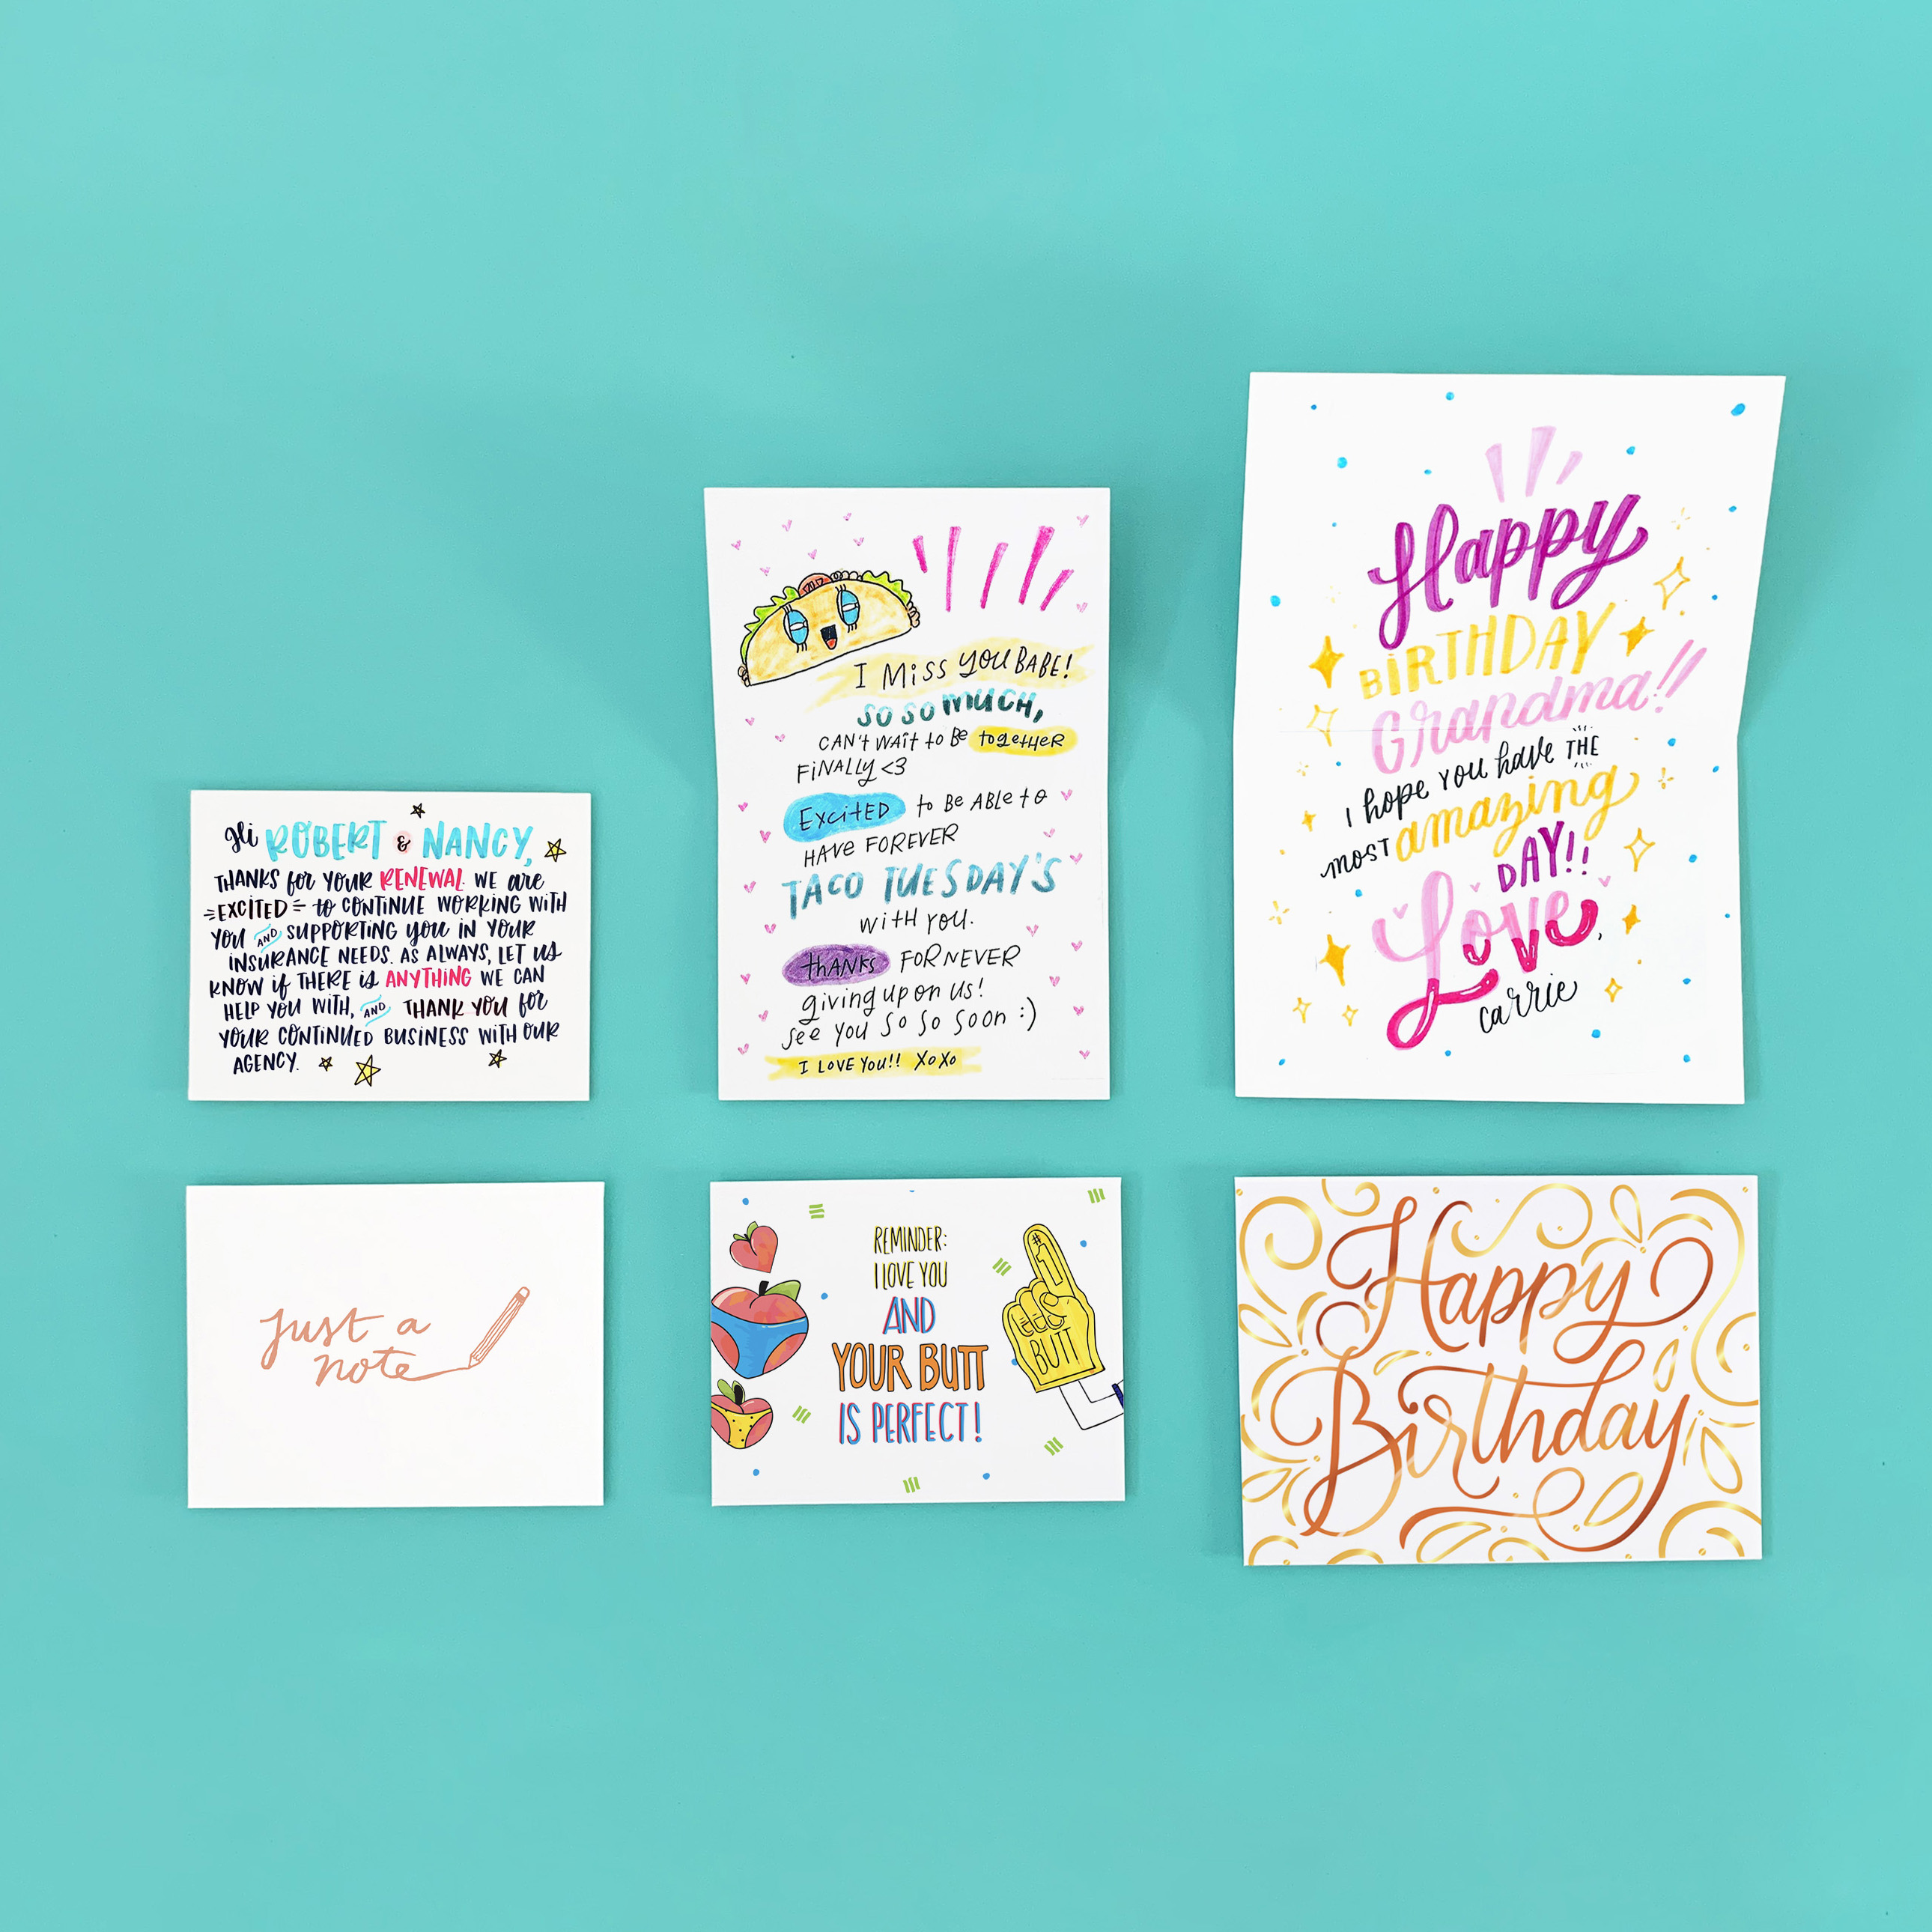 Tarjetas de felicitación de cumpleaños coloridas y mensajes de agradecimiento sobre un fondo color turquesa